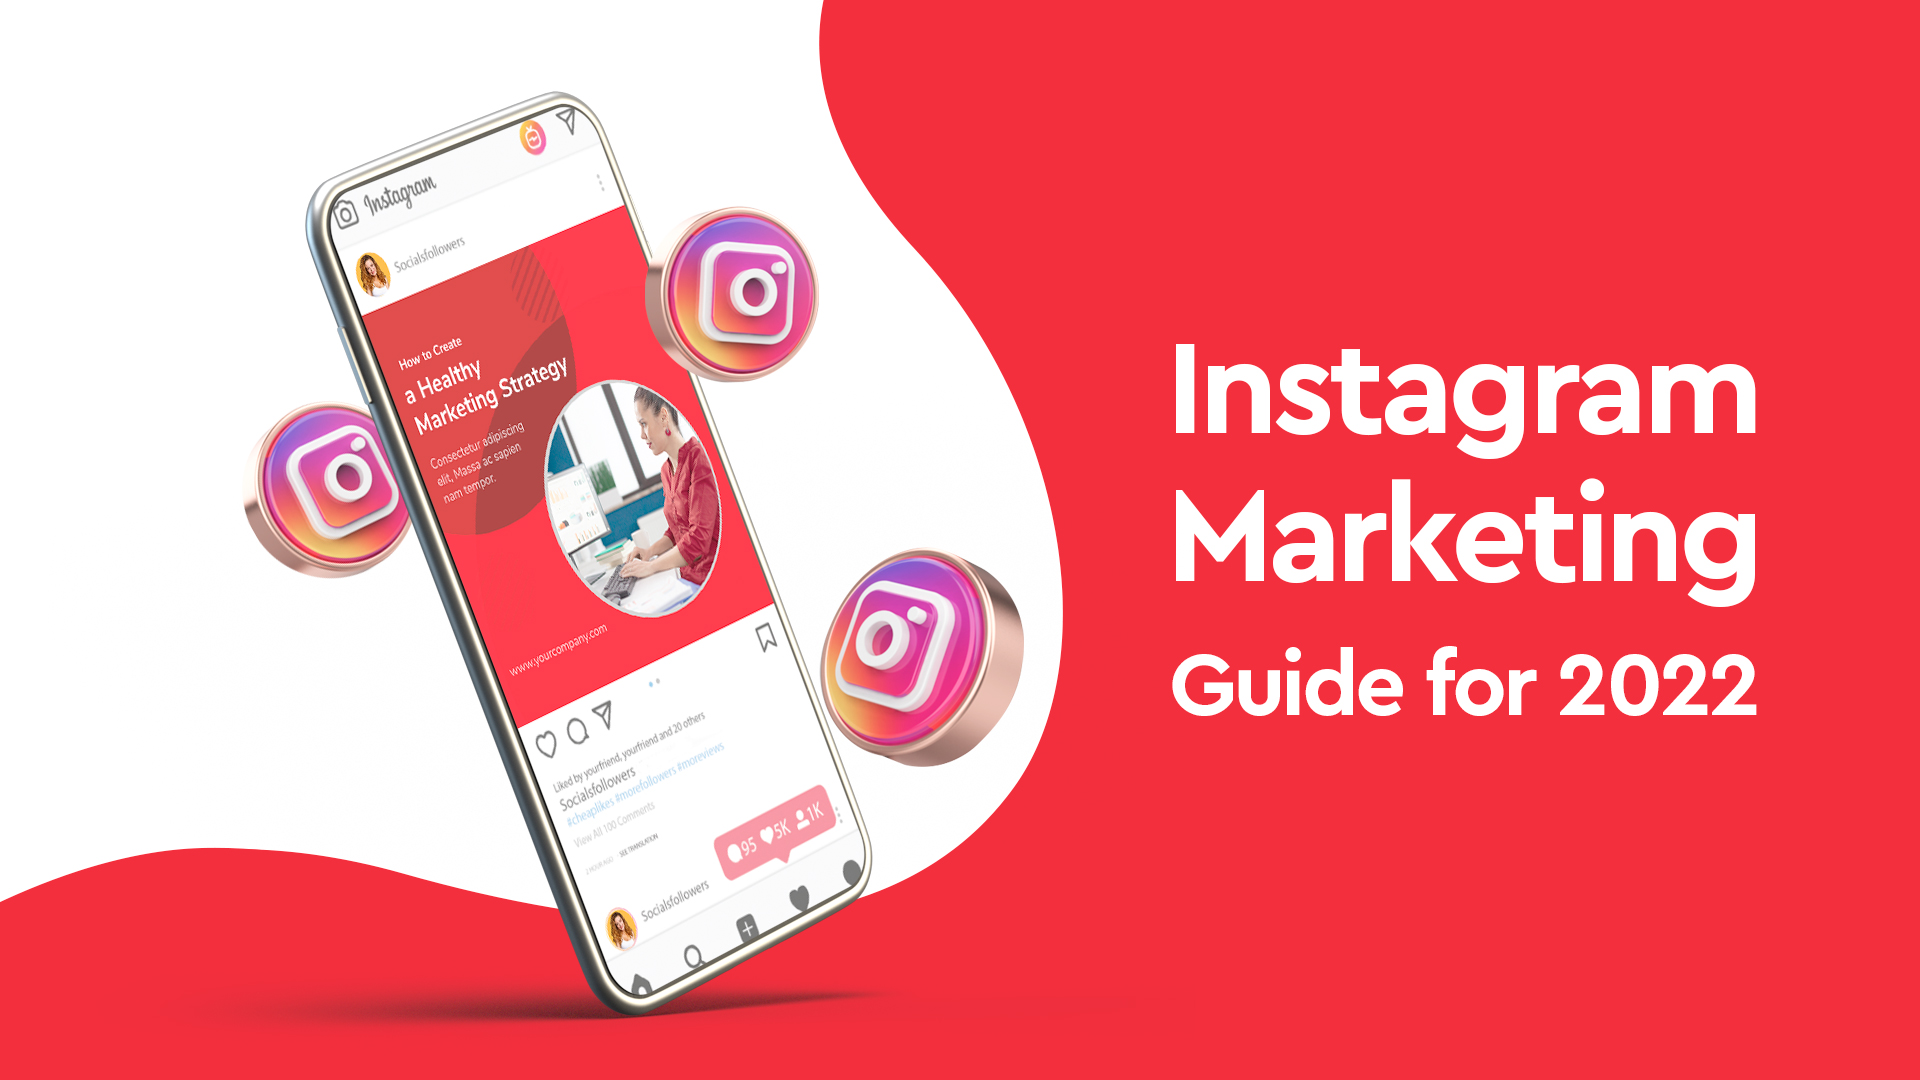 Instagram Marketing Guide for 2022